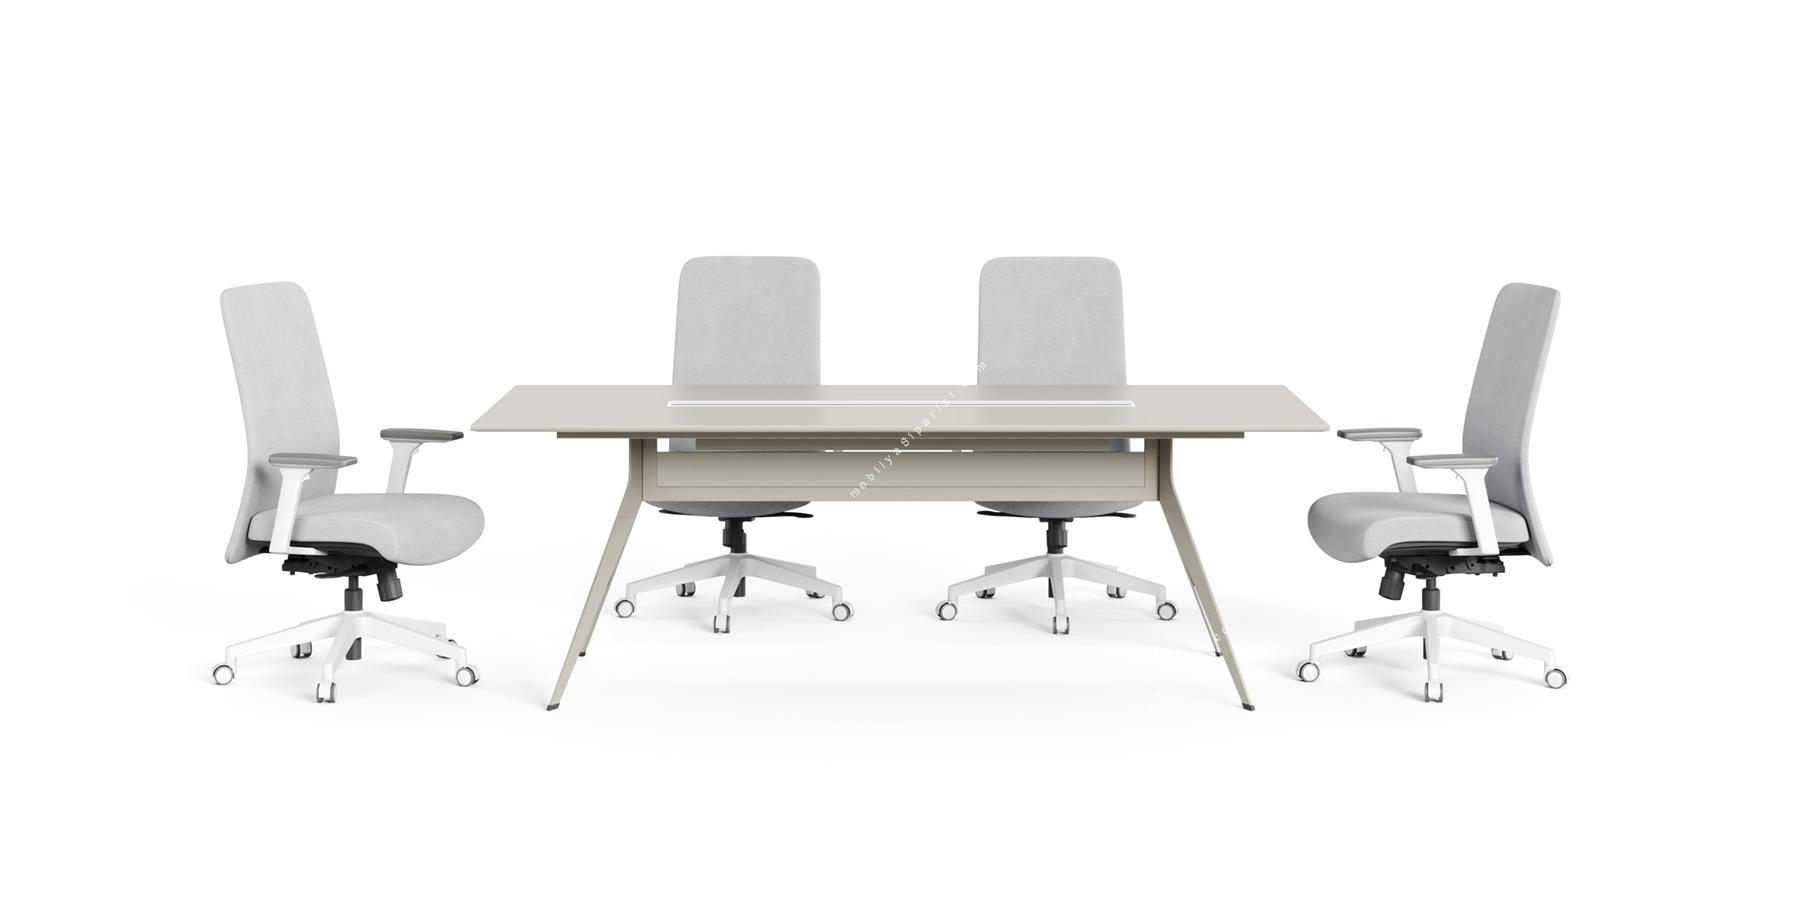 stark metal ayaklı toplantı masası 240cm